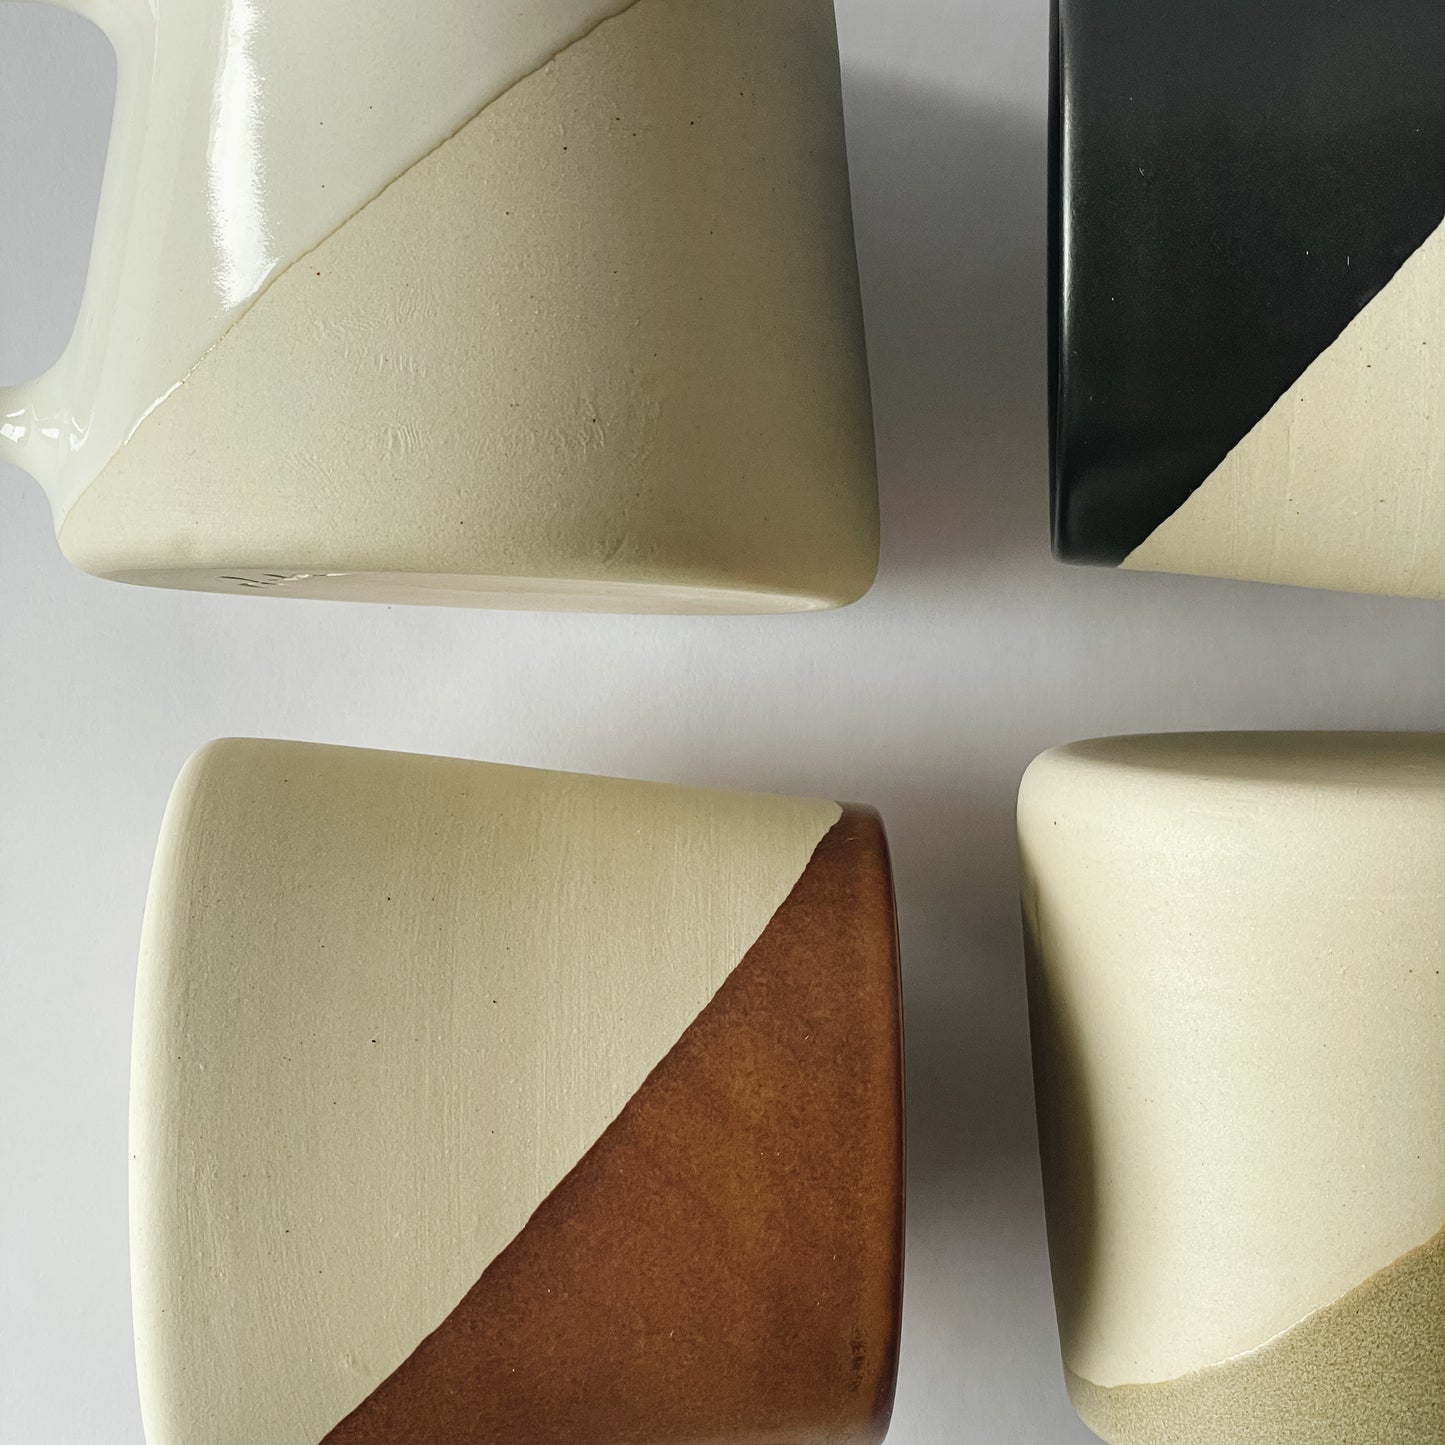 Shelby Page Ceramics Dip Mug | Saddle Brown